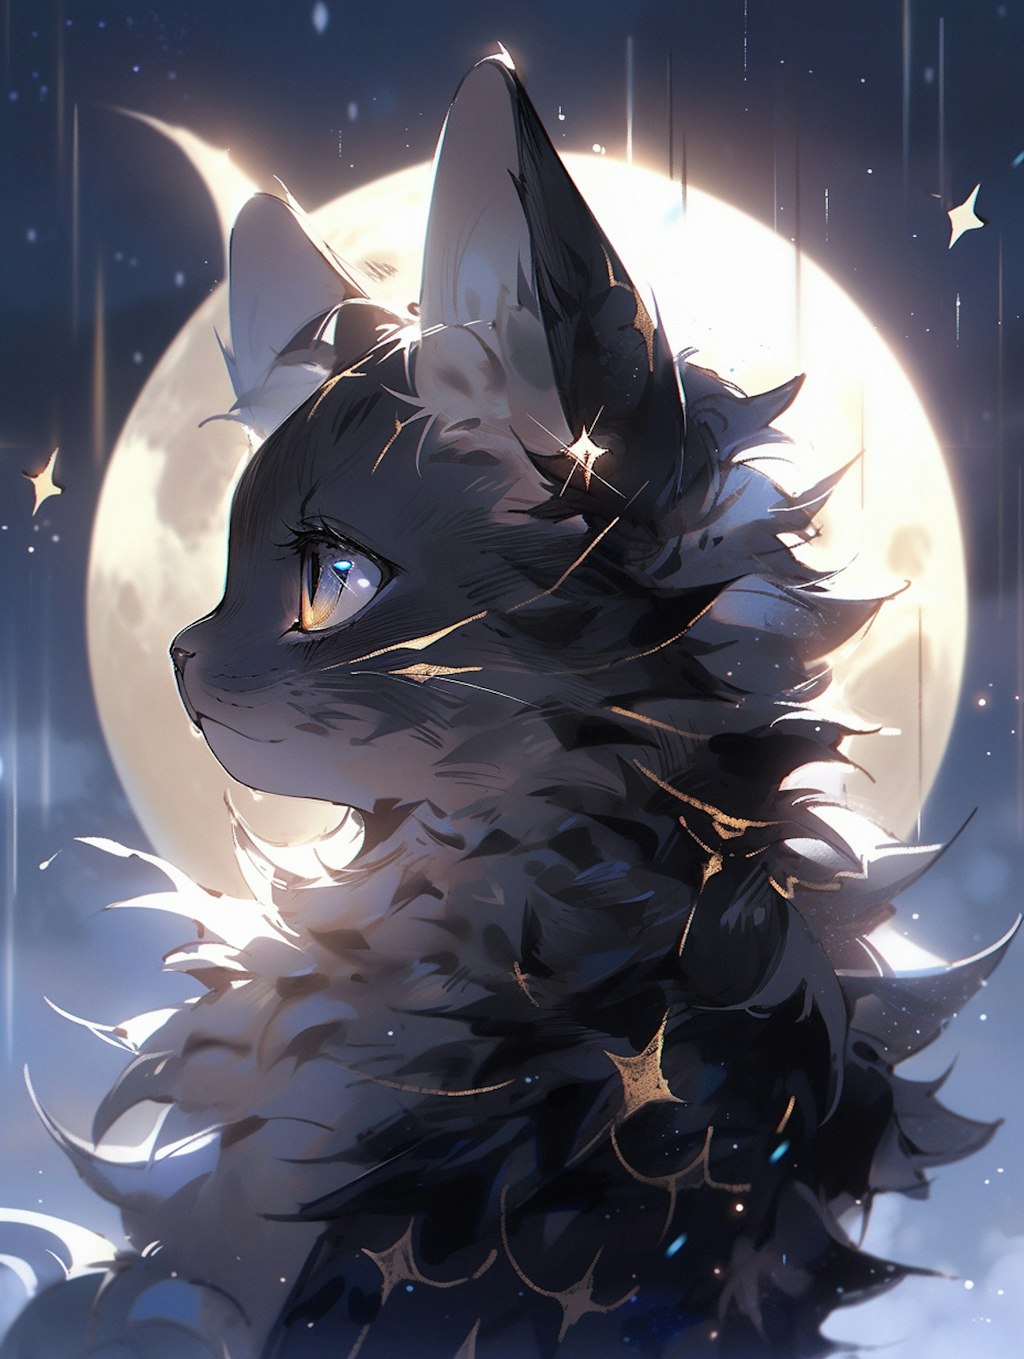 月夜の黒猫